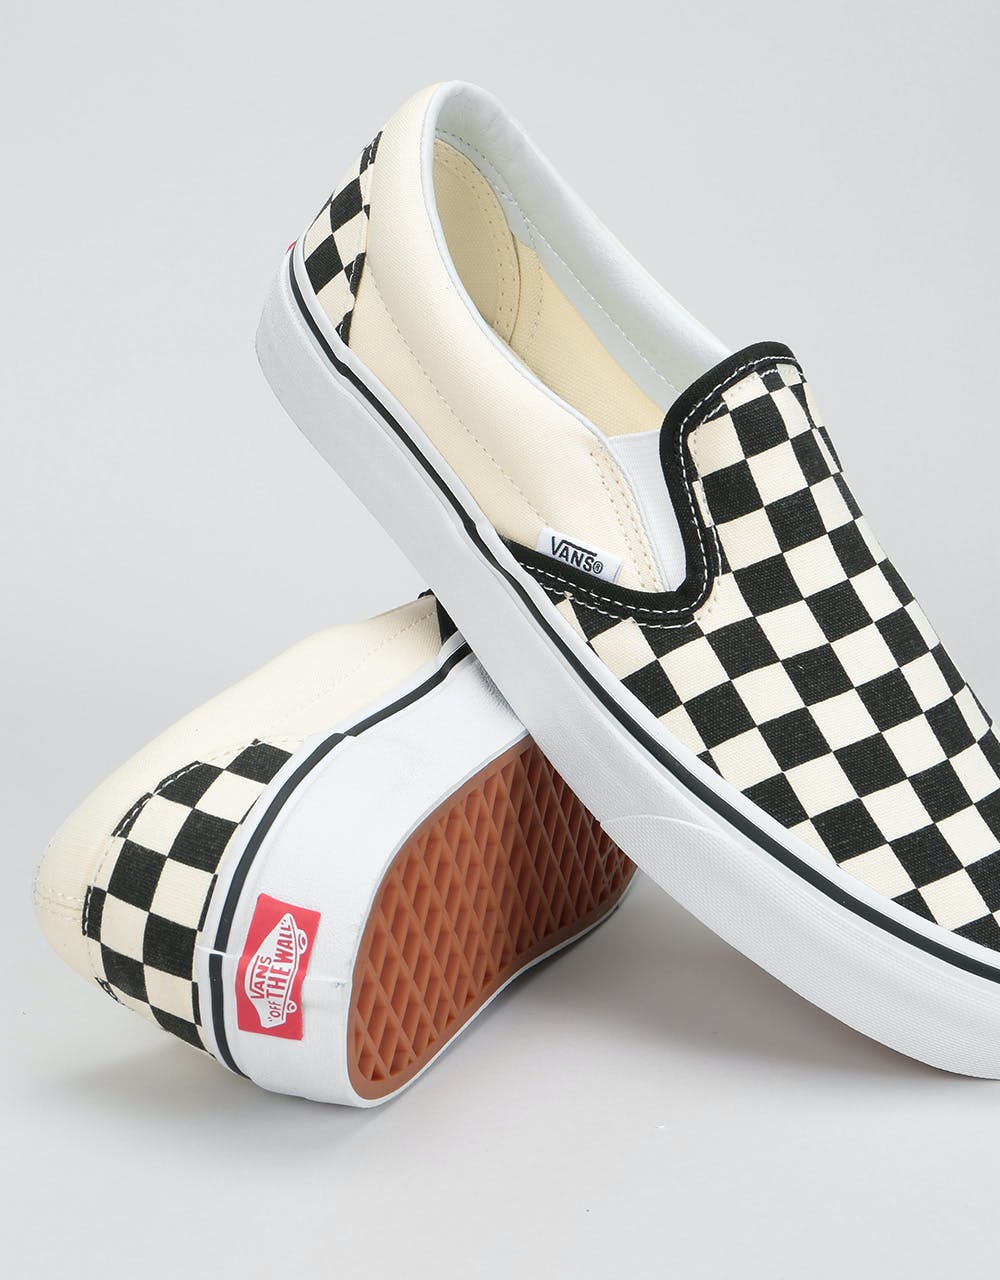 Vans Slip-On Pro Skate Shoes - (Checkerboard) Black/White